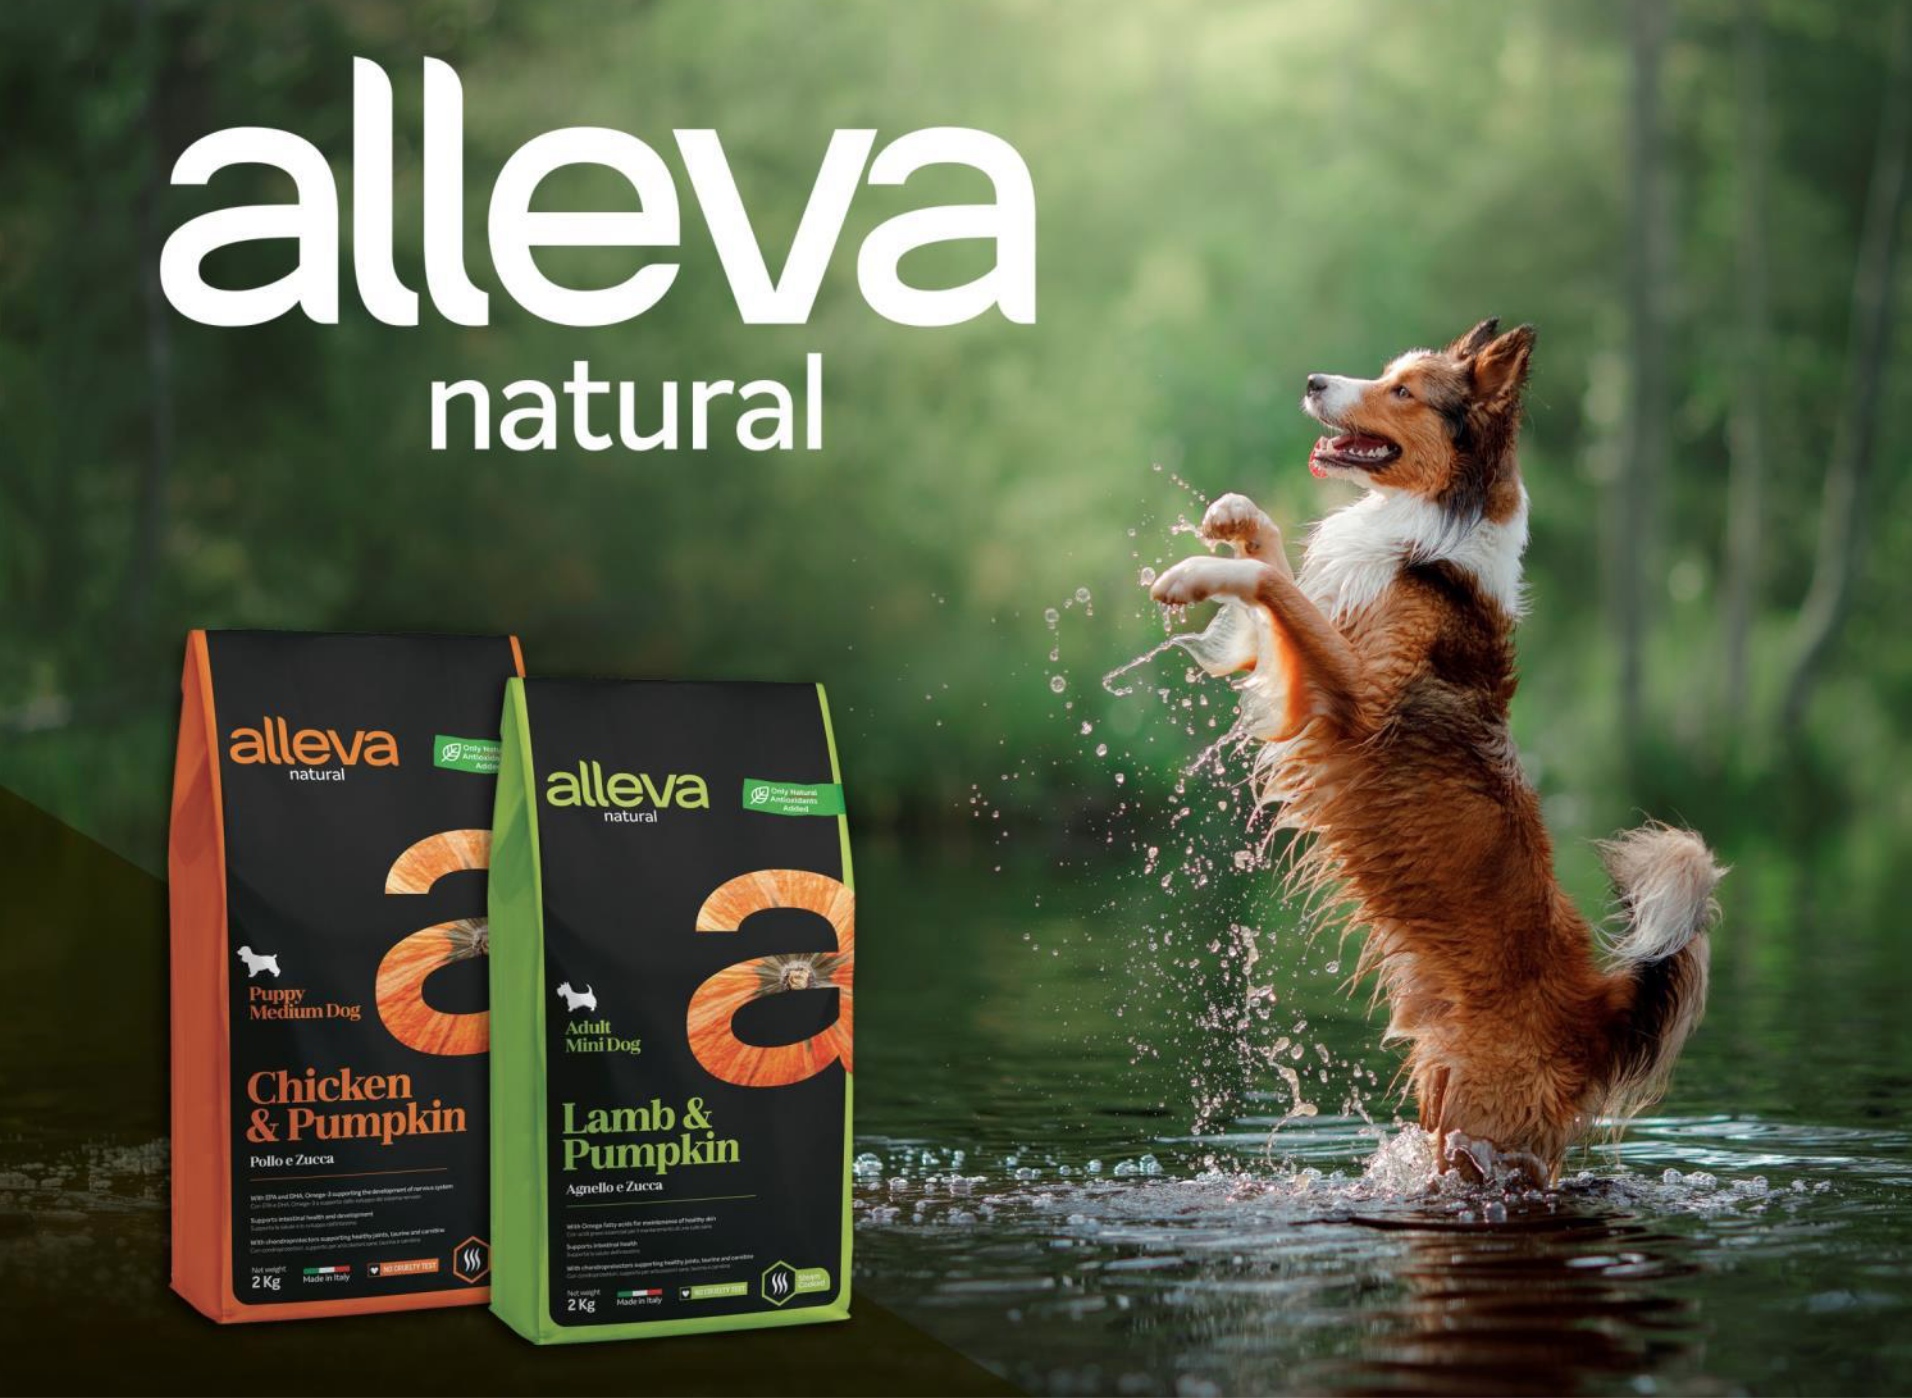 купить Сухой корм Alleva Natural для собак (Италия) с бесплатной доставкой в Калининграде